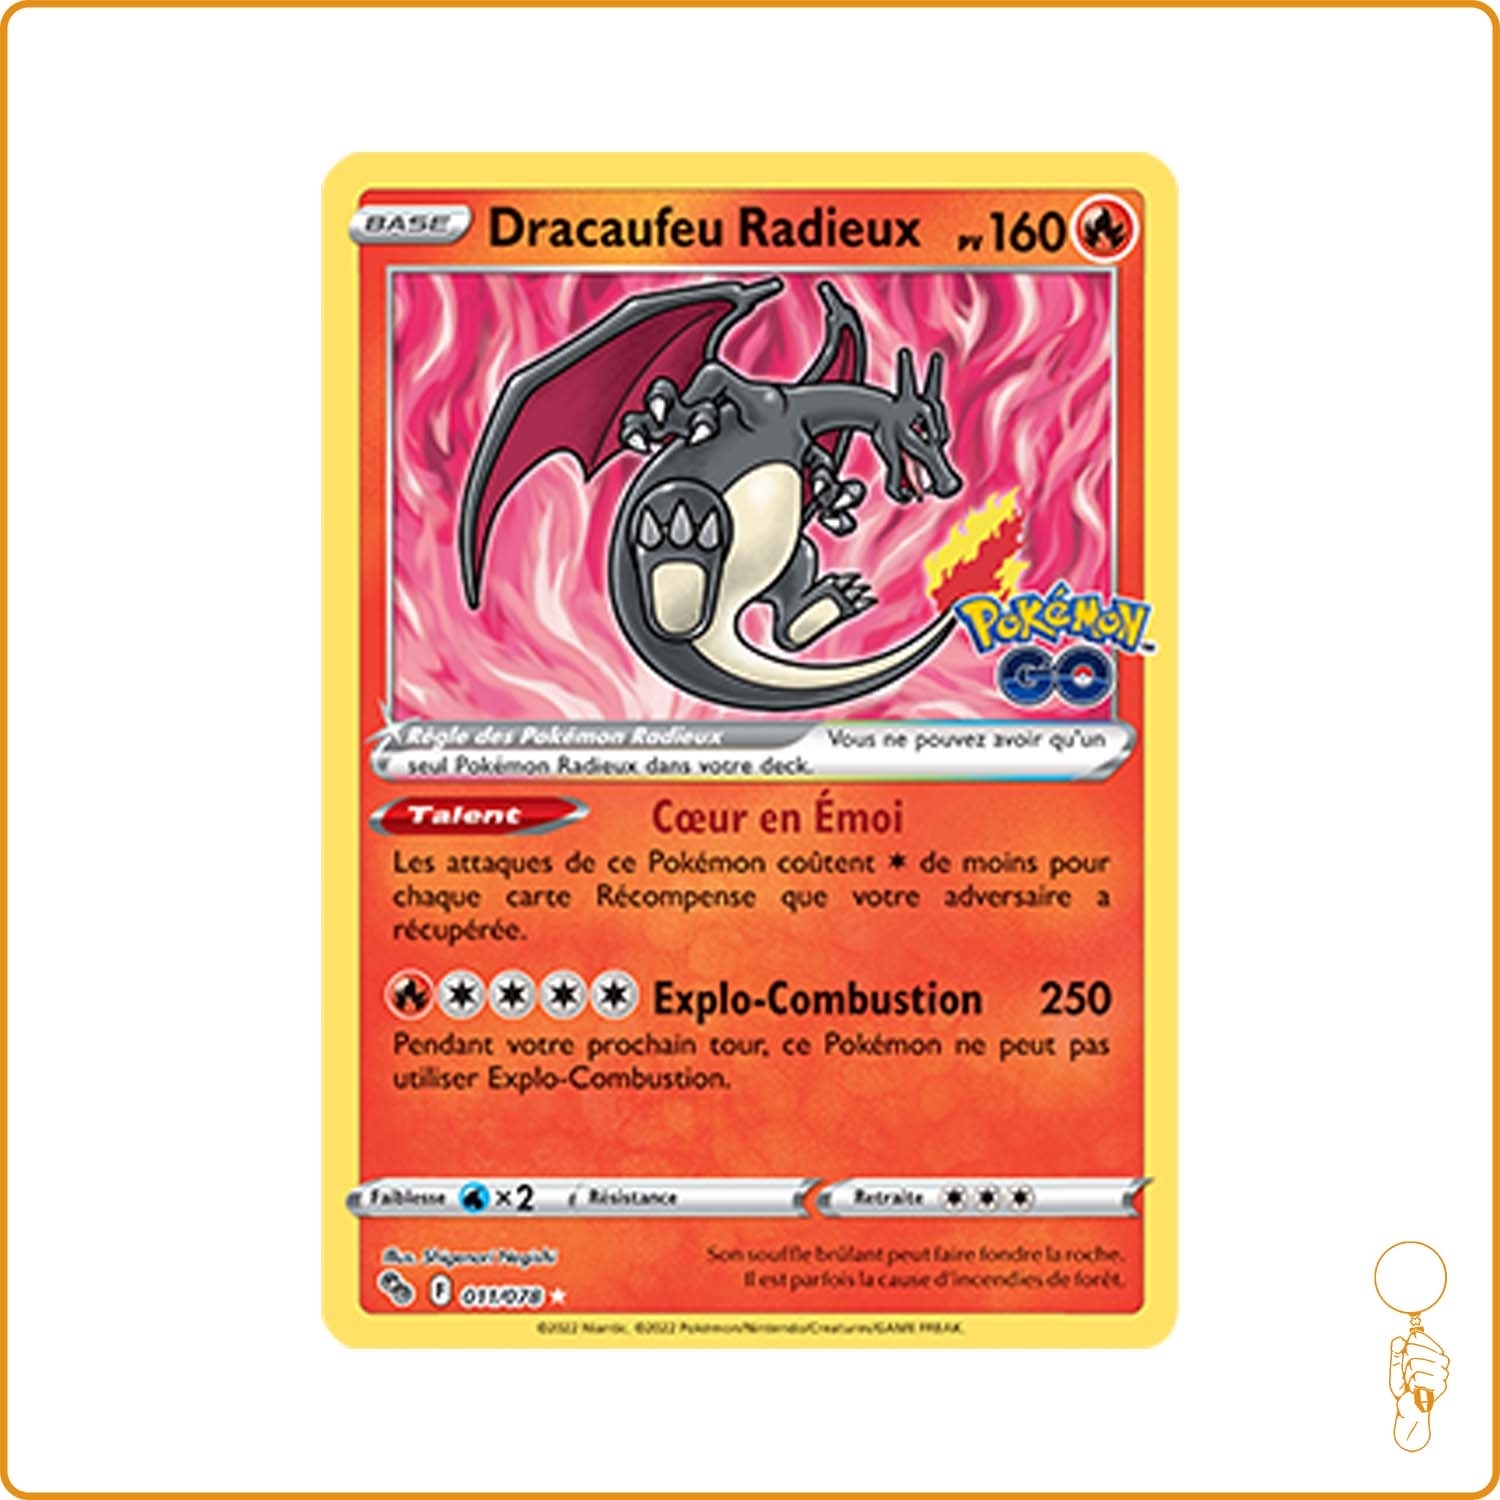 Carte Pokémon dracaufeu radieux 11/78 pokémon go - Pokemon